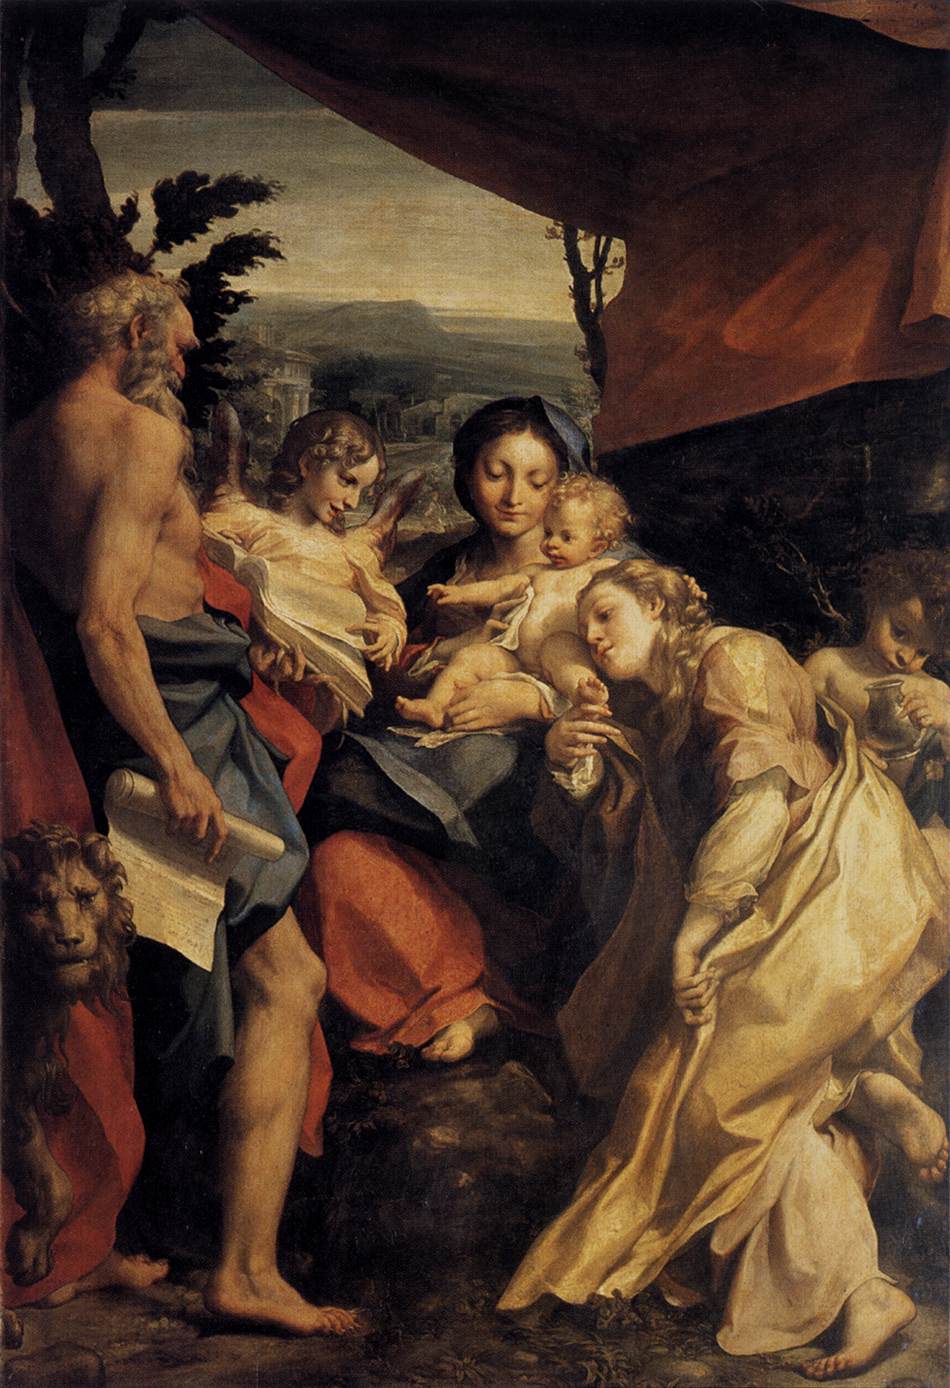 La Vergine e il bambino con San Jerónimo e María Magdalena (il giorno)